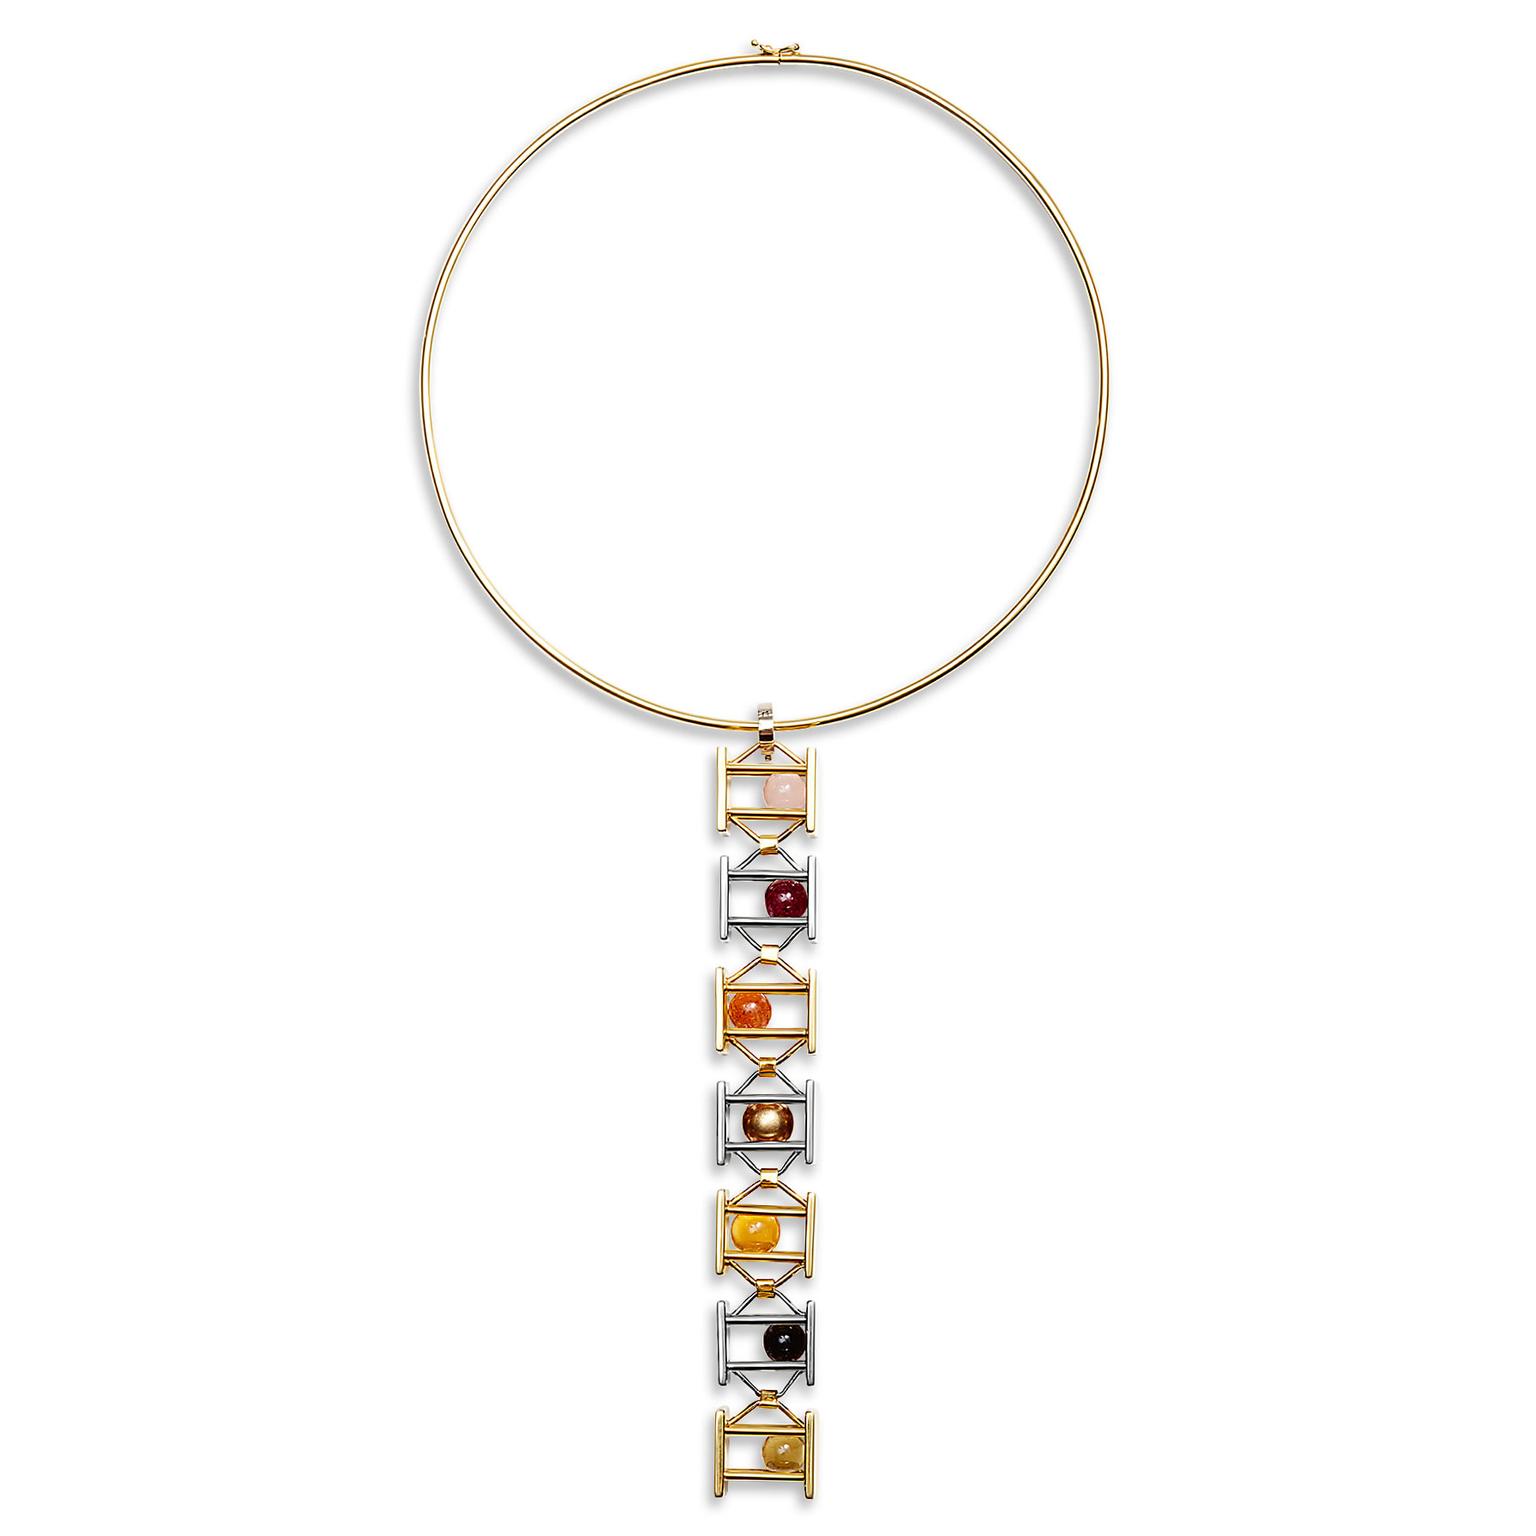 Yael Sonia Urban Encounters necklace